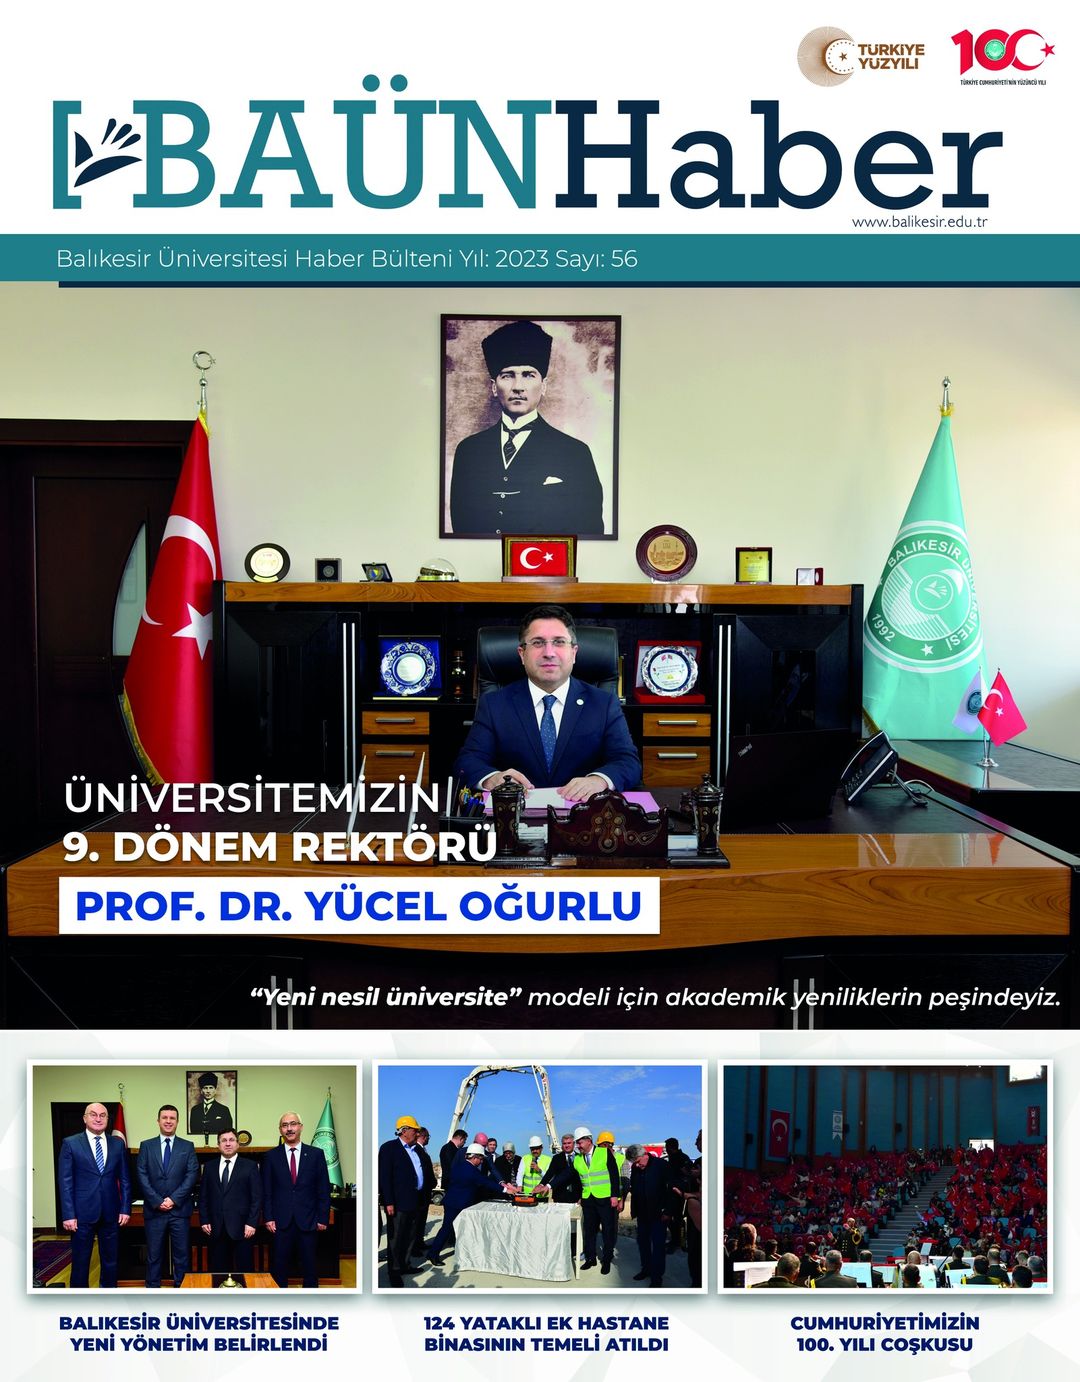 Balıkesir Üniversitesi, Kurumsal Gelişmeleri ve Haberleri BAÜN Haber Dergisinde Paylaşıyor